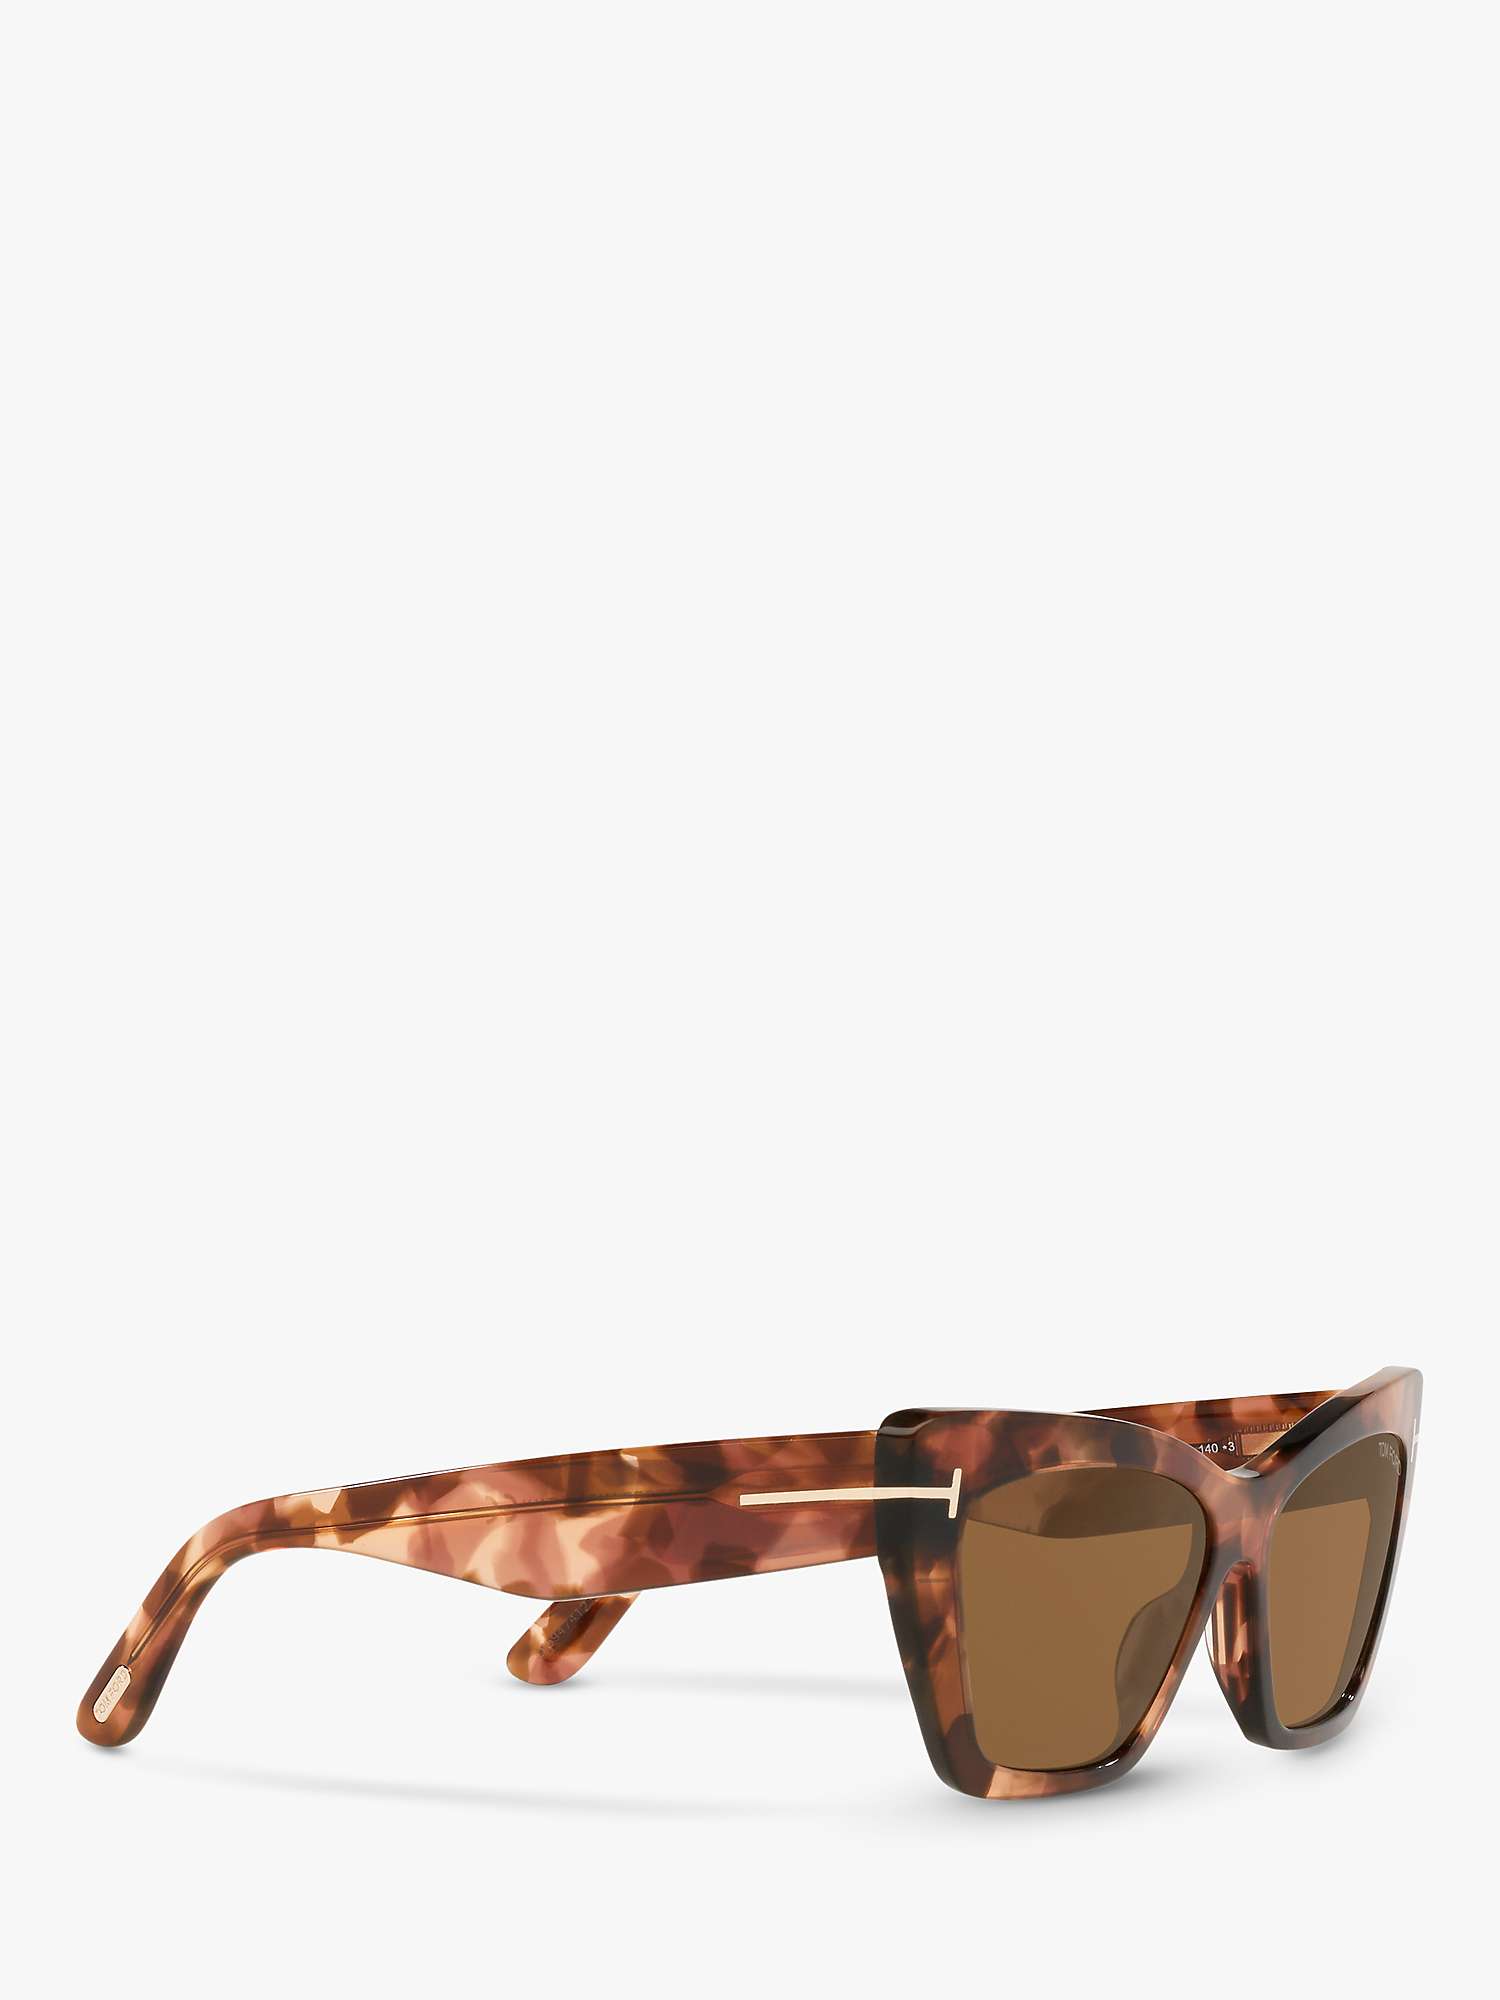 Buy TOM FORD FT0871 Women's Wyatt Cat's Eye Sunglasses, Tortoise/Brown Online at johnlewis.com